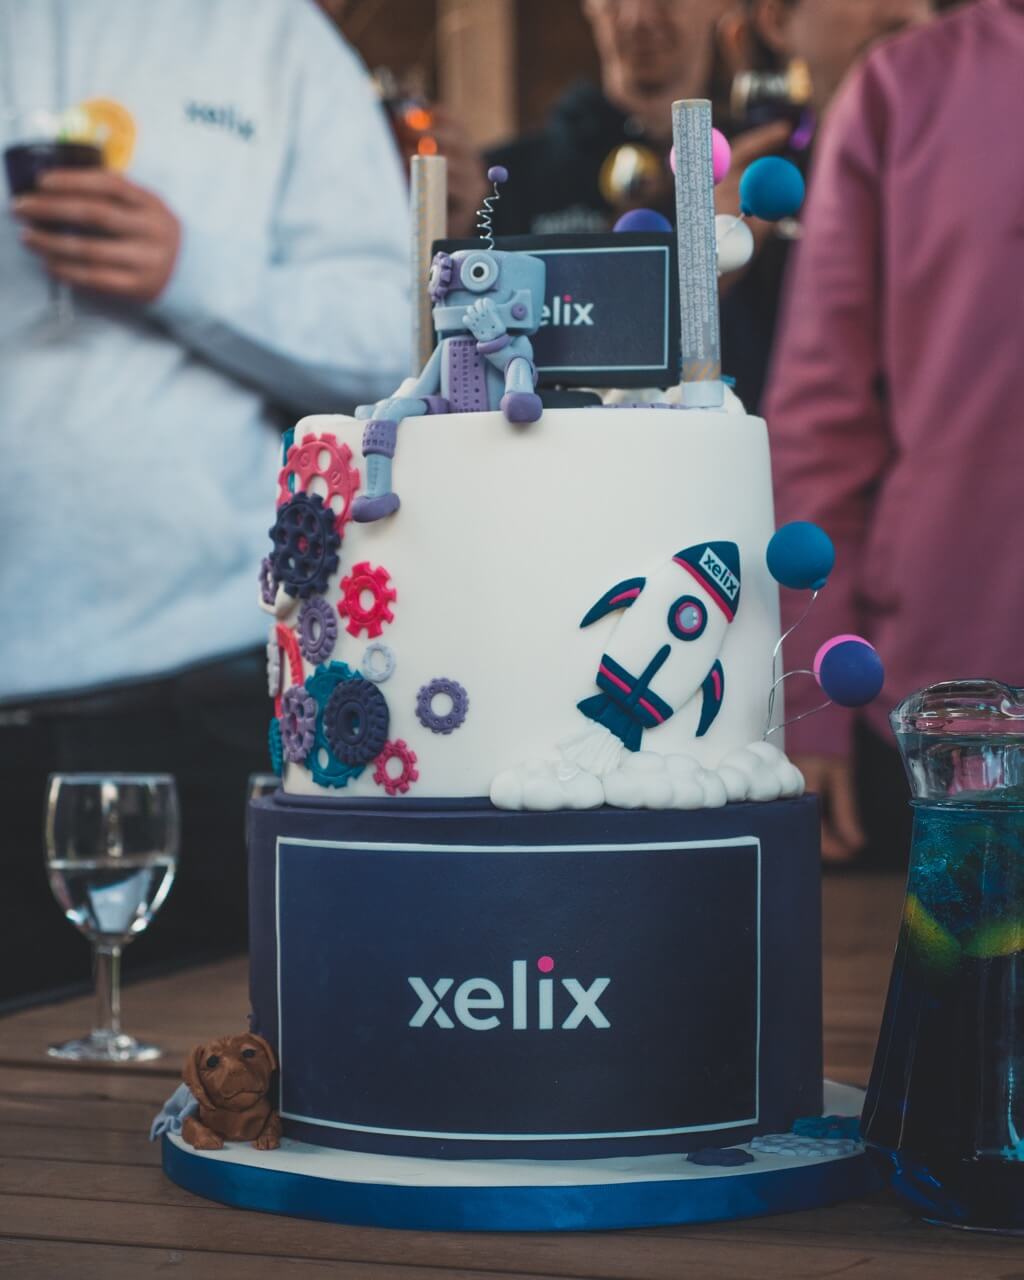 Xelix cake